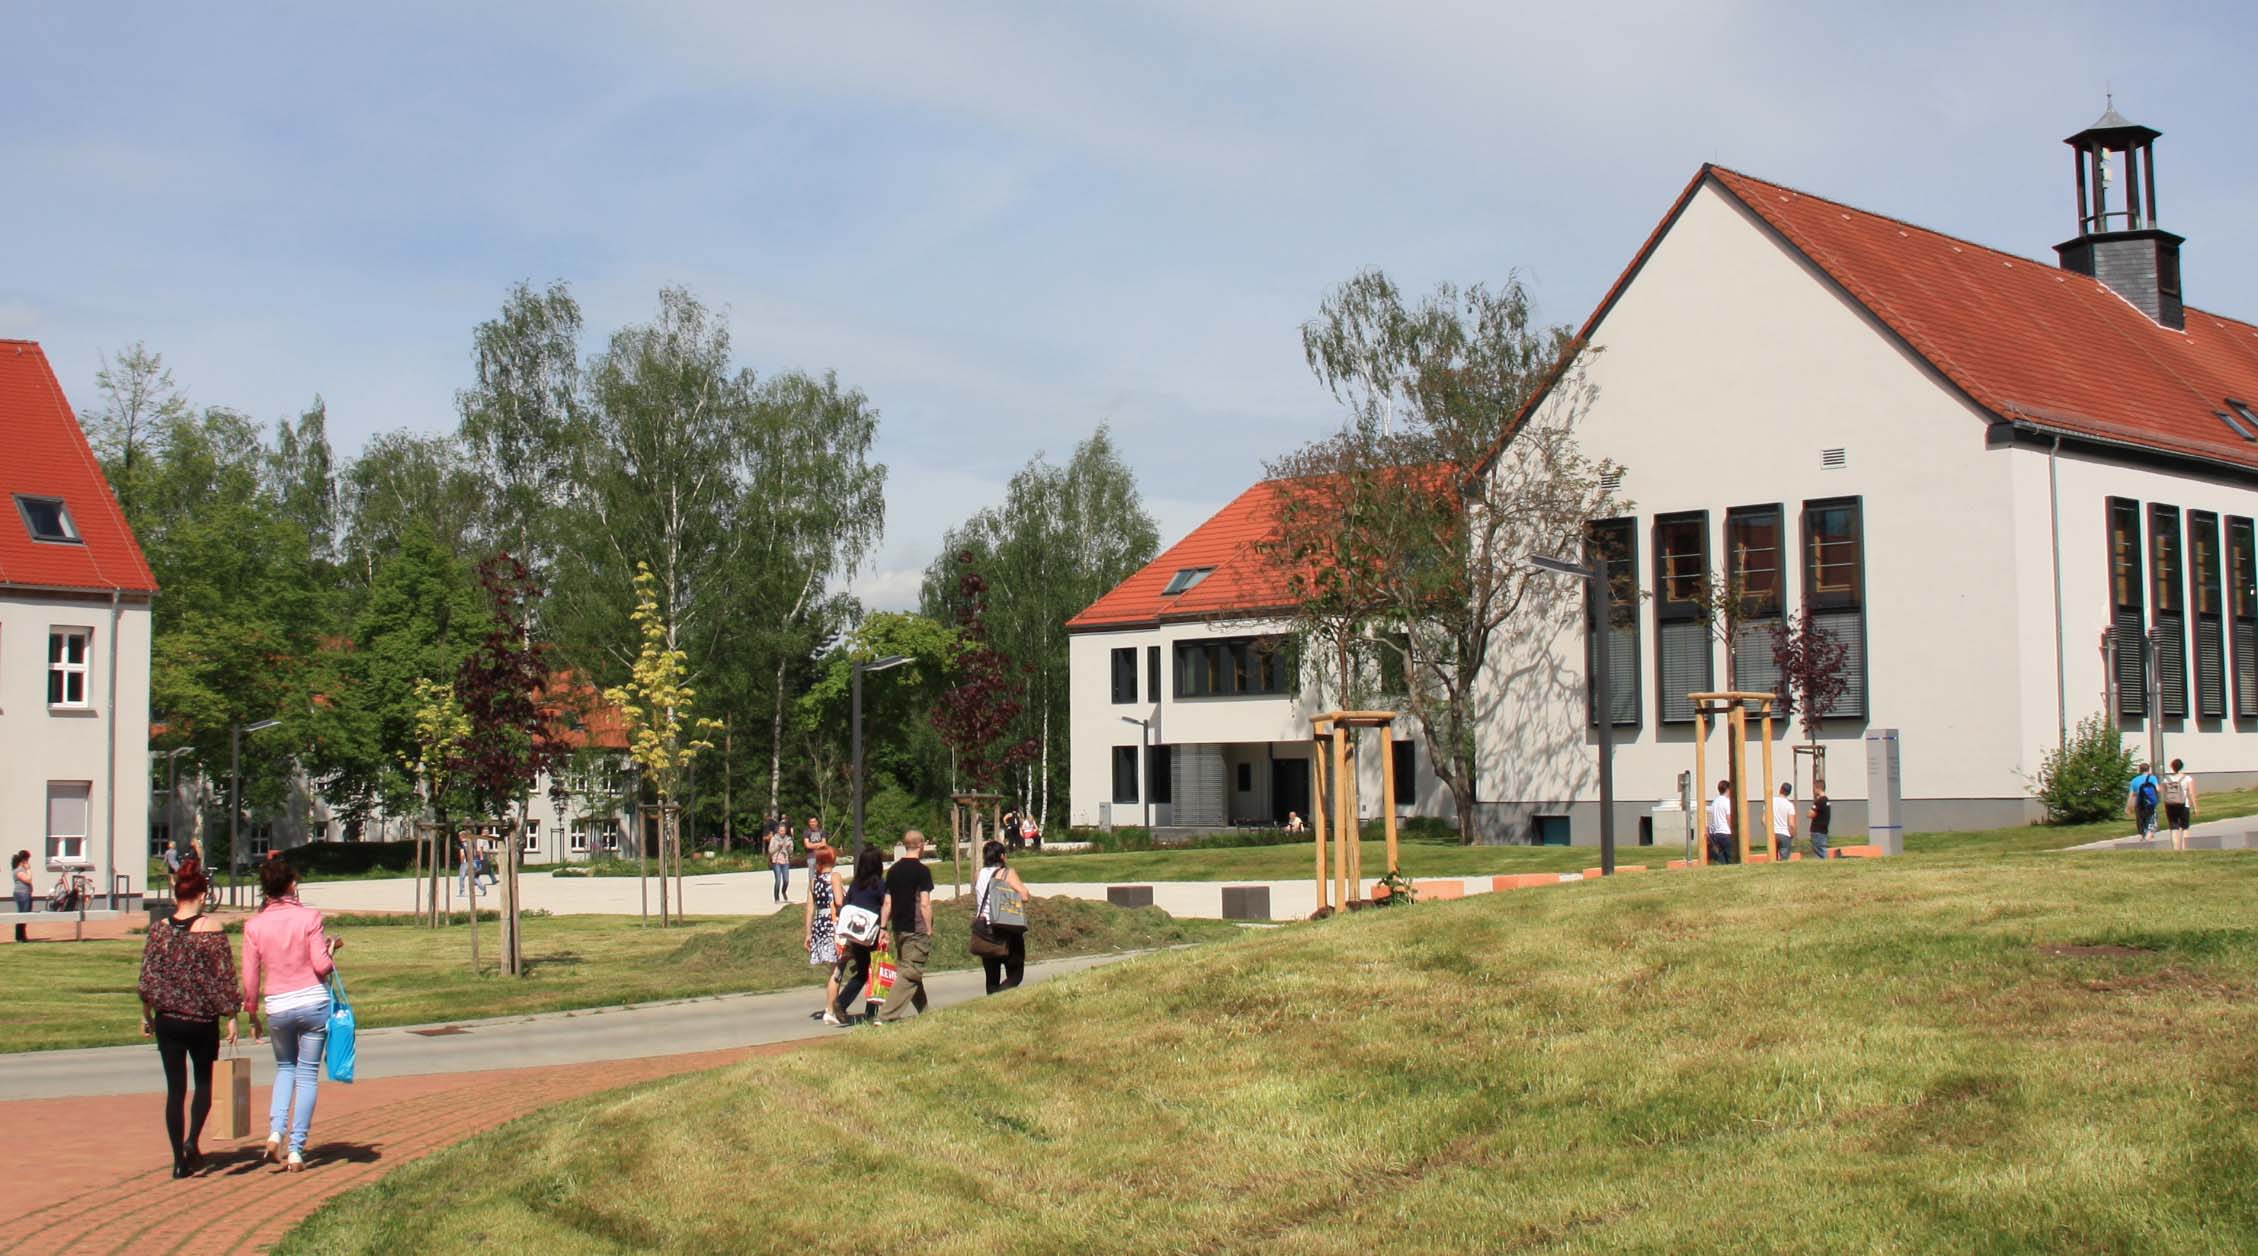 Foto: Außenbereich des Campus Scheffelberg mit umherlaufenden Studierenden. Blick auf Lehrgebäude recht´s und kleinen Ausschnitt des Haus 3 am linken Bildrand.